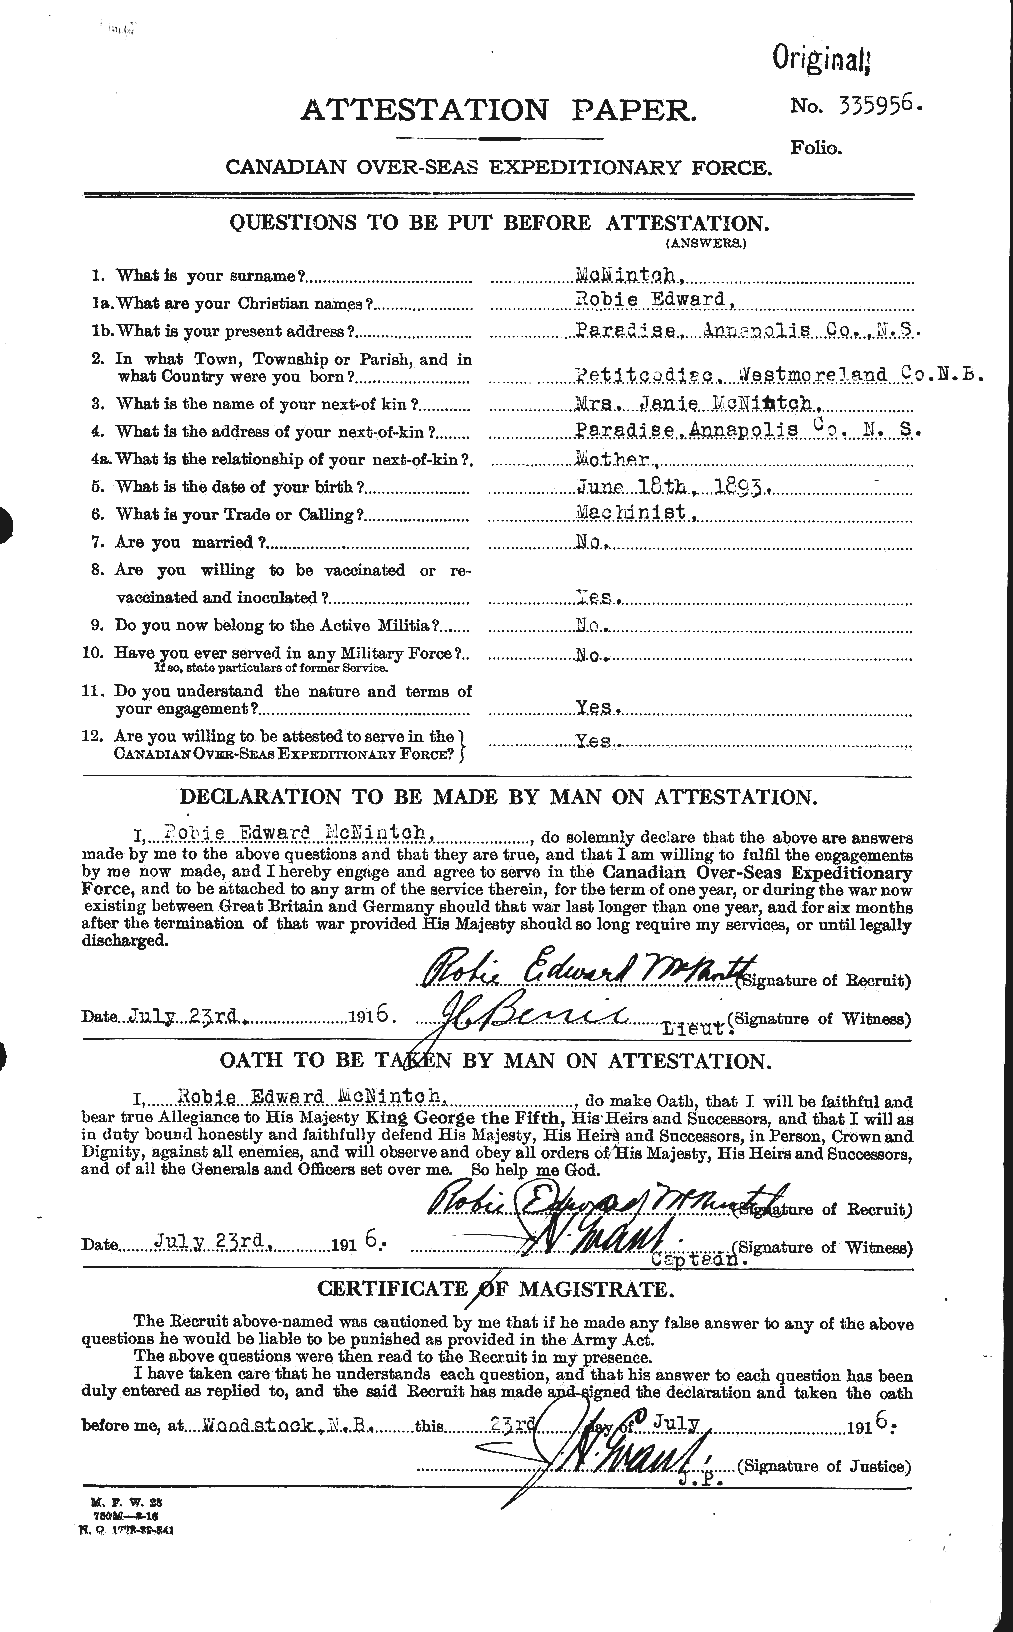 Dossiers du Personnel de la Première Guerre mondiale - CEC 539269a